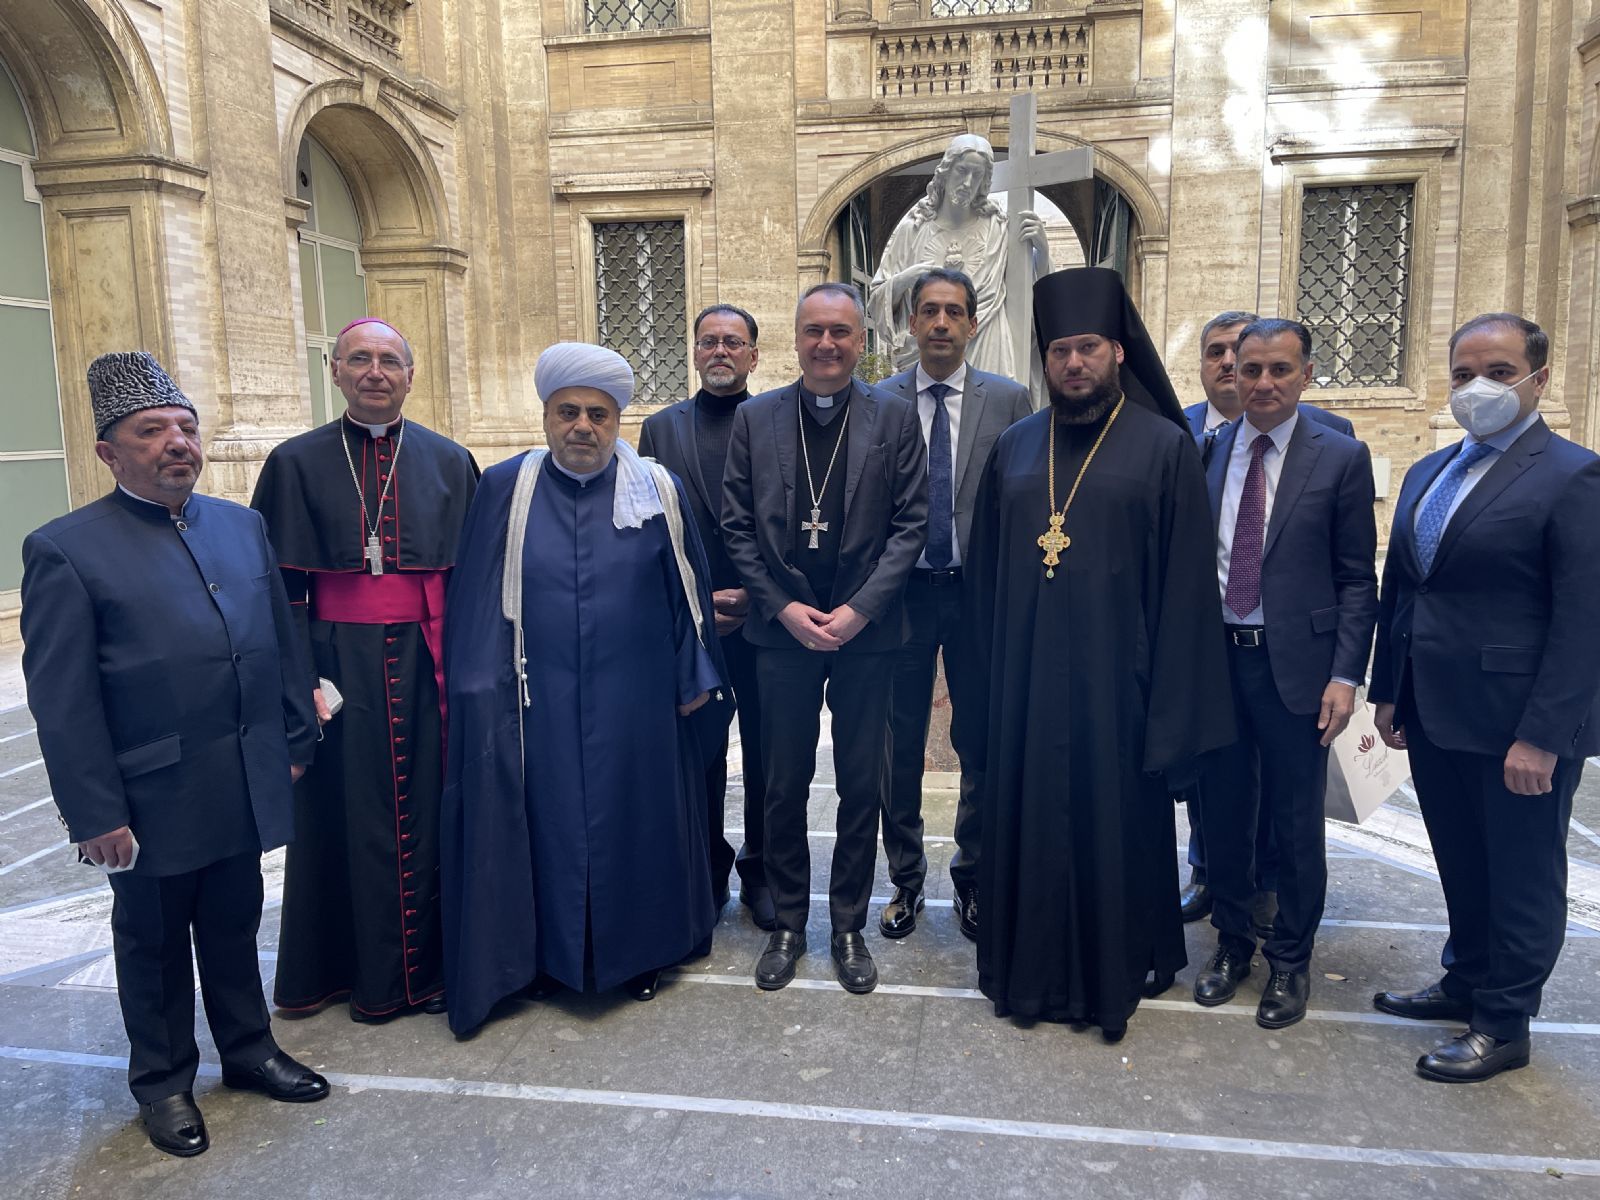 Религиозные лидеры Азербайджана встретились с приором Базилики св. Петра и Секретарём Папского Совета по межрелигиозному диалогу